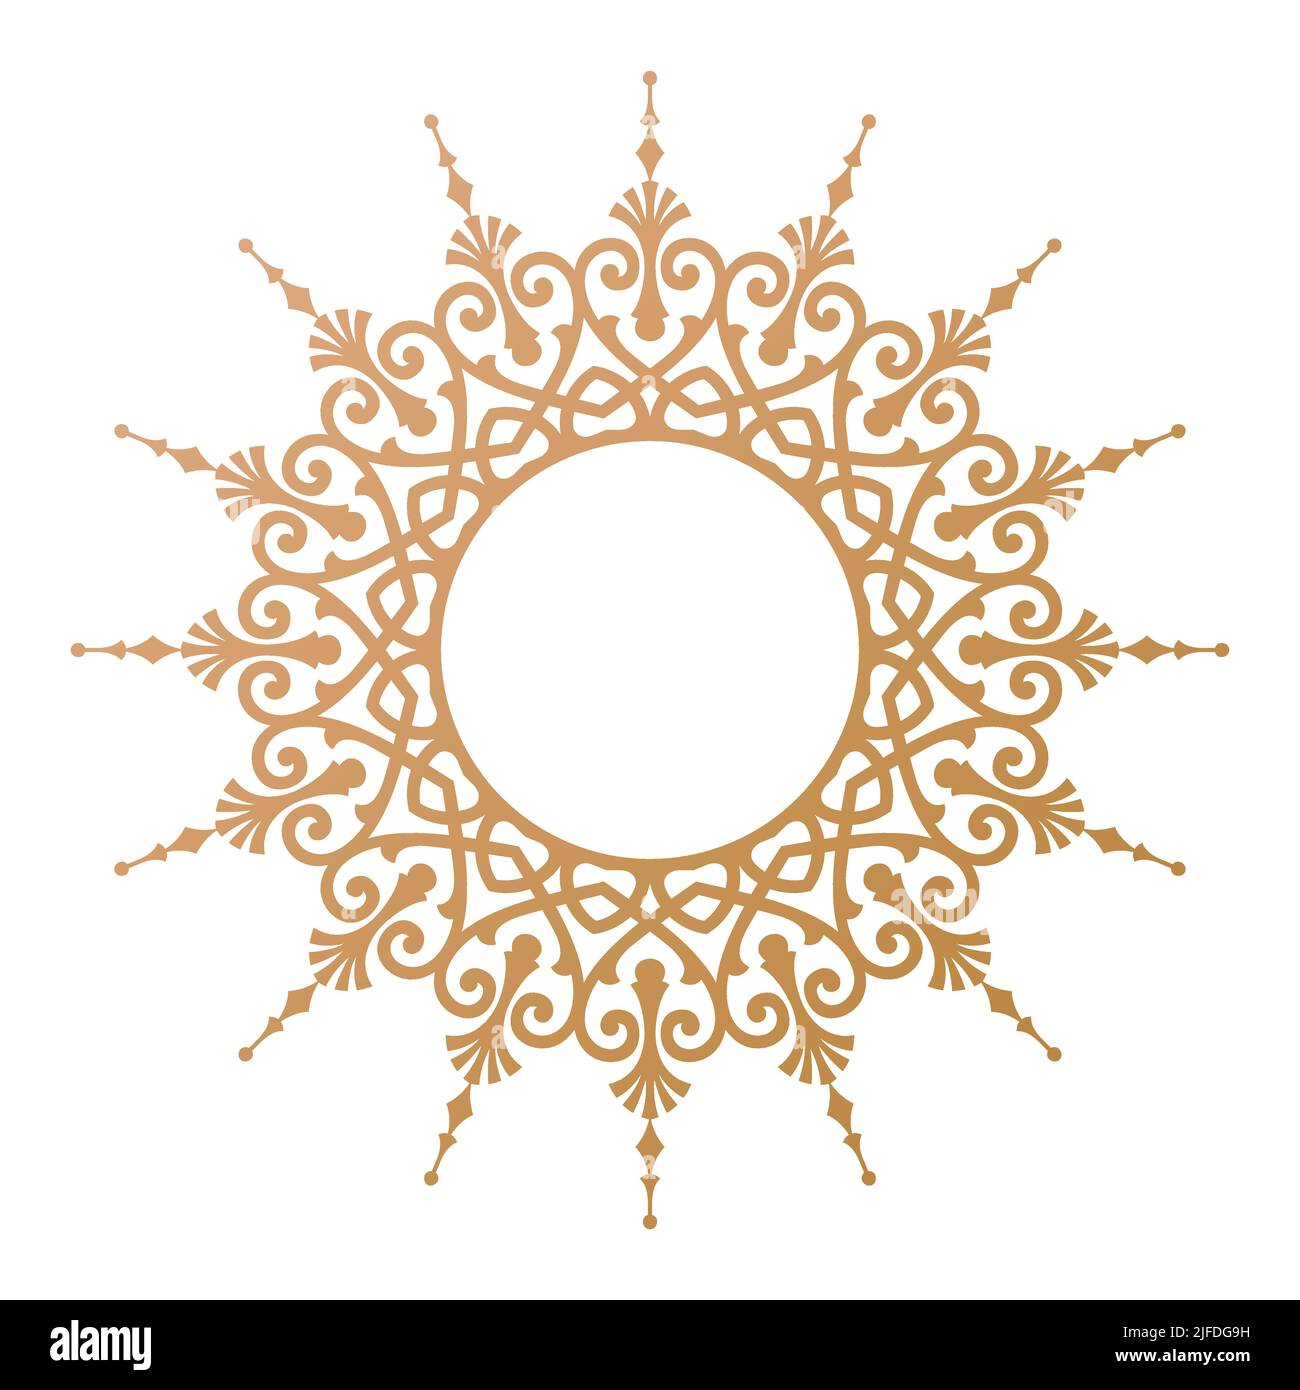 Cadre circulaire décoratif élément élégant pour un style oriental inspiré de l'art persan, arabe, marocain et turc Illustration de Vecteur